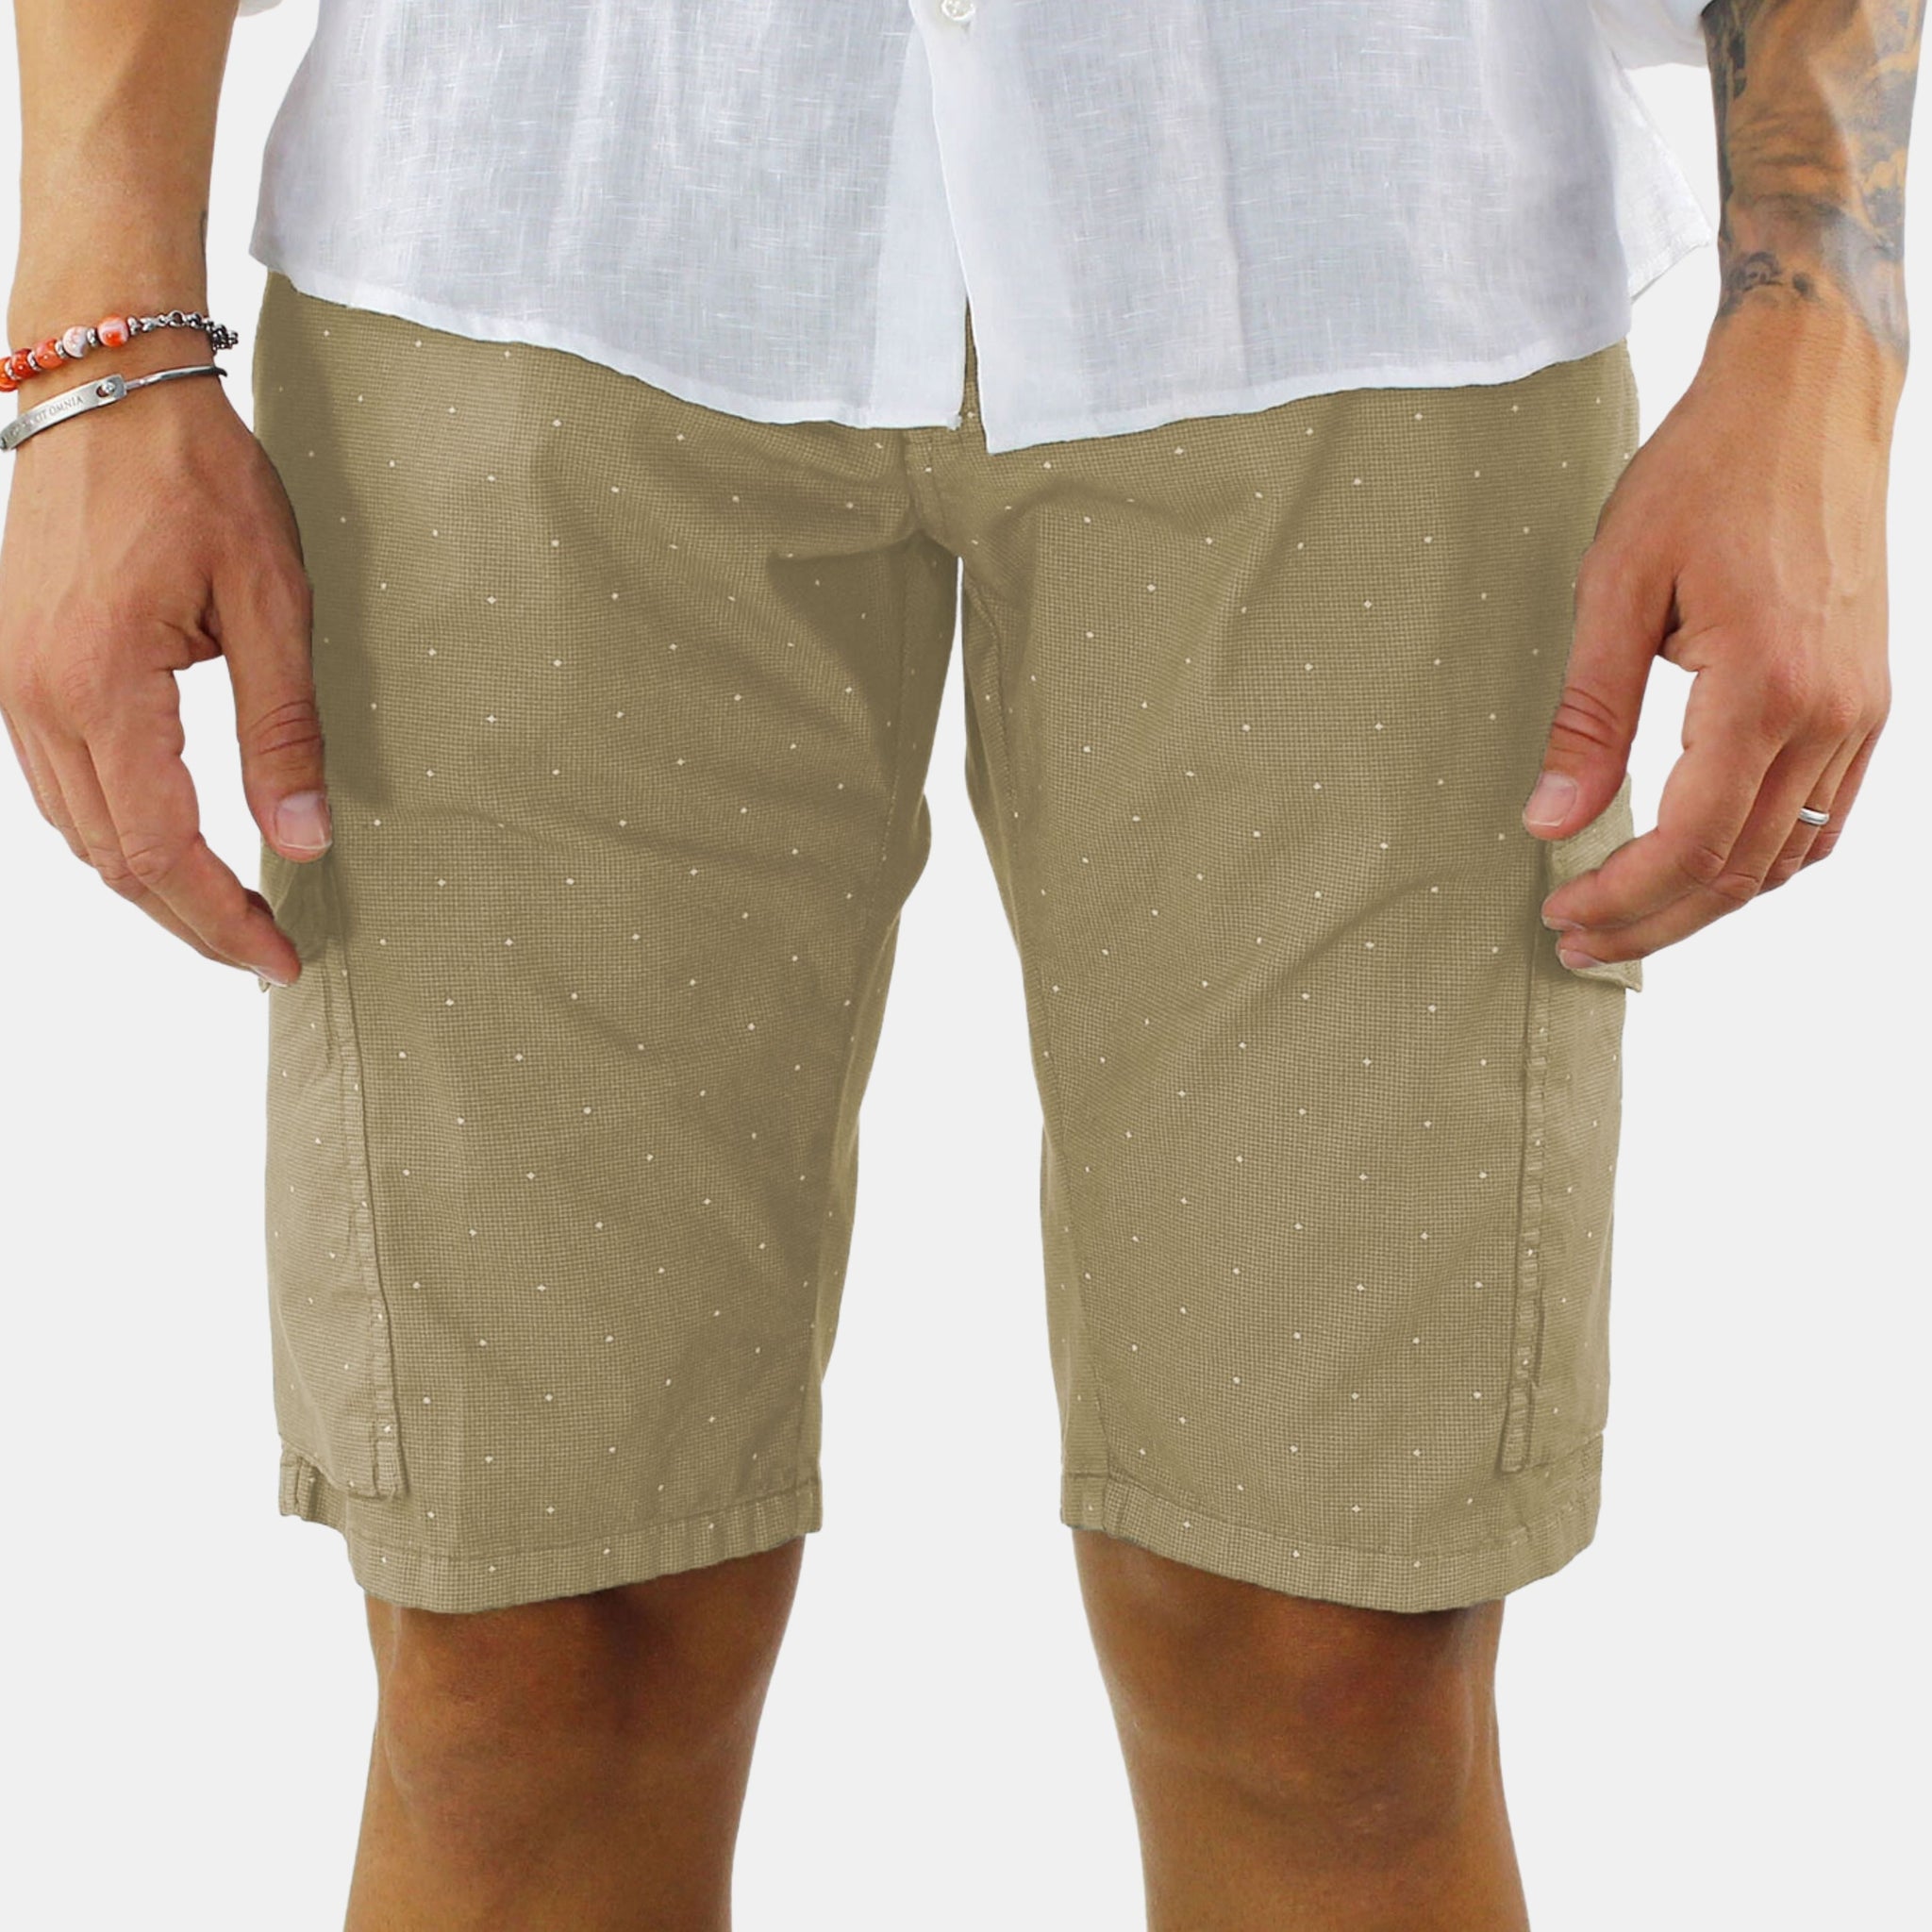 Bermuda shorts with polka dots